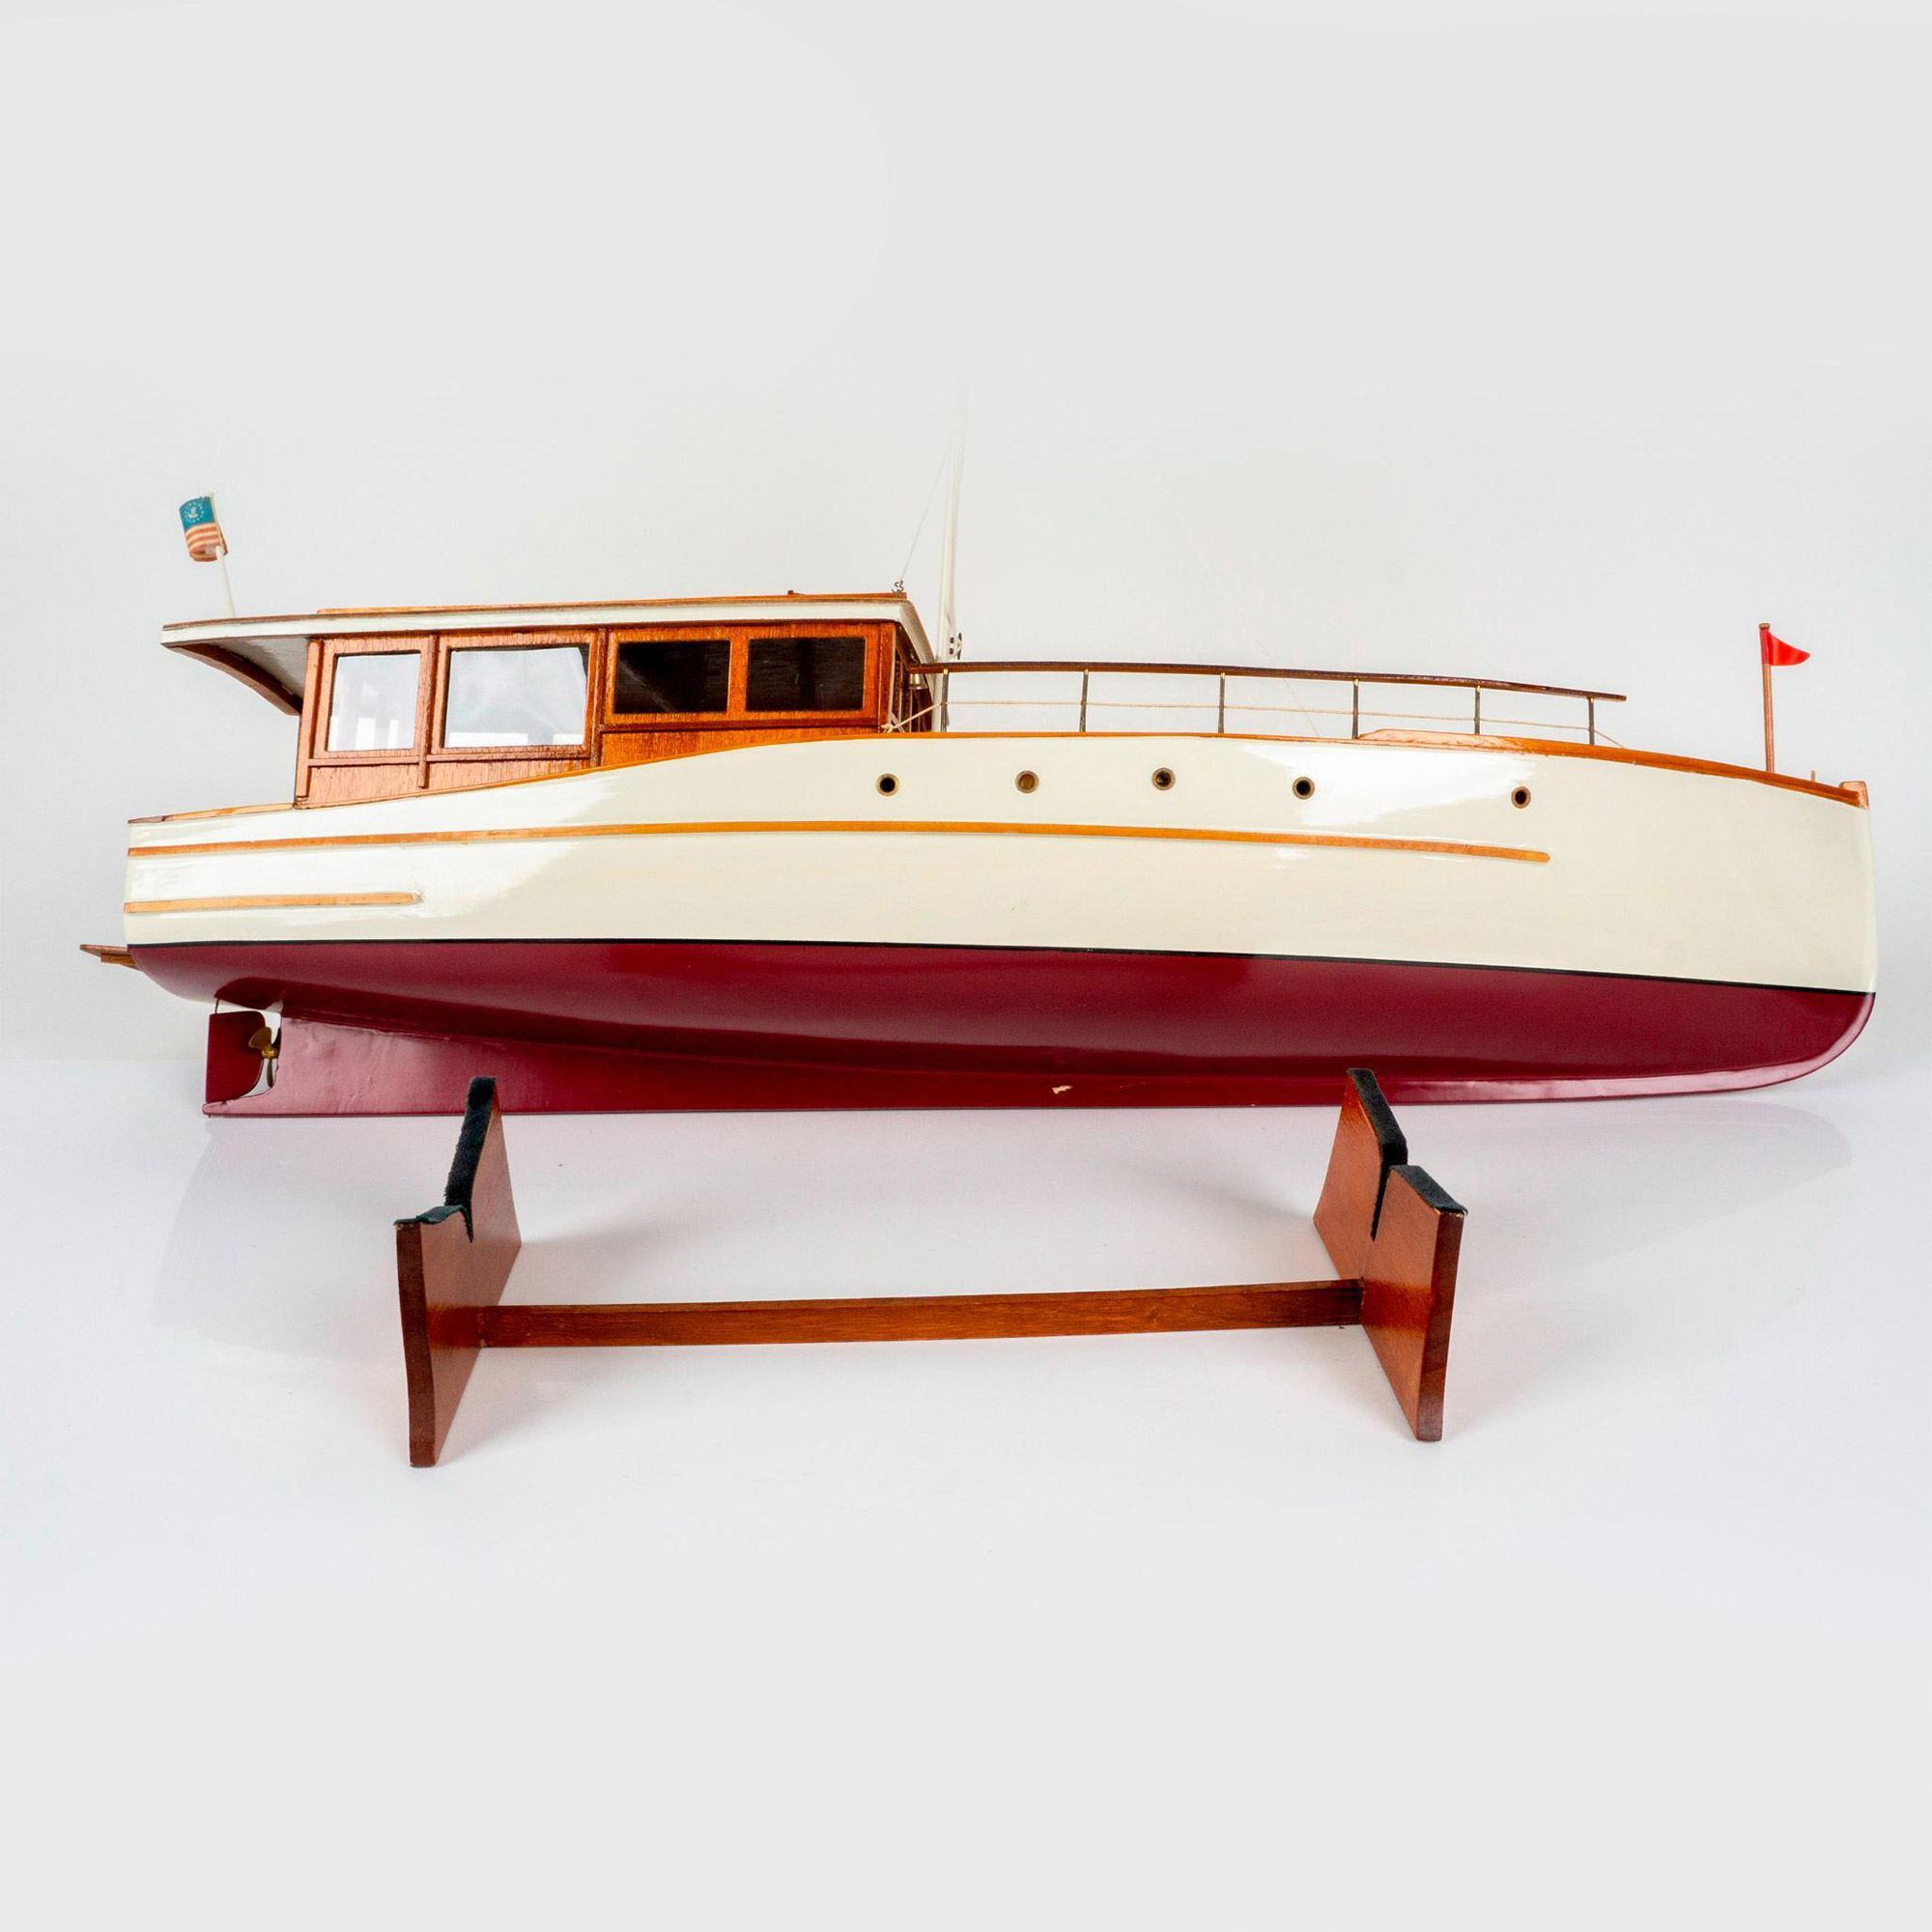 1929 Lake Union Dreamboat Large Wood Model Boat - Image 5 of 5